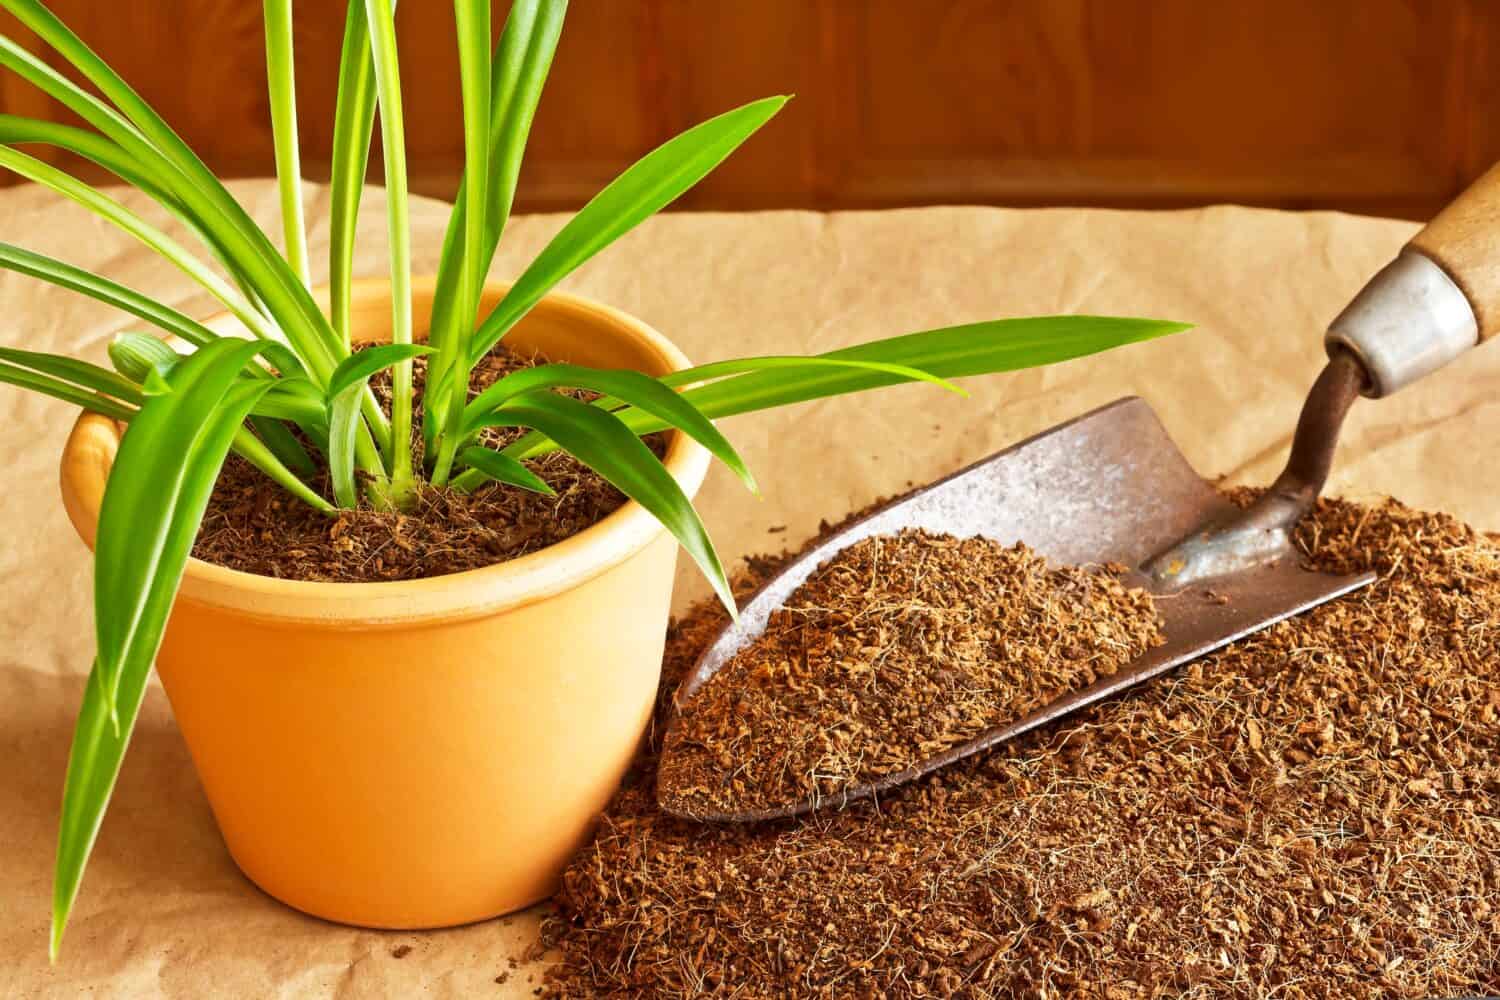 Substrato secco in fibra di cocco realizzato in modo ecologico ed economico con mattoni di cocco, usato come terriccio da coltivazione o da vaso, con spatola e una pianta in vaso.